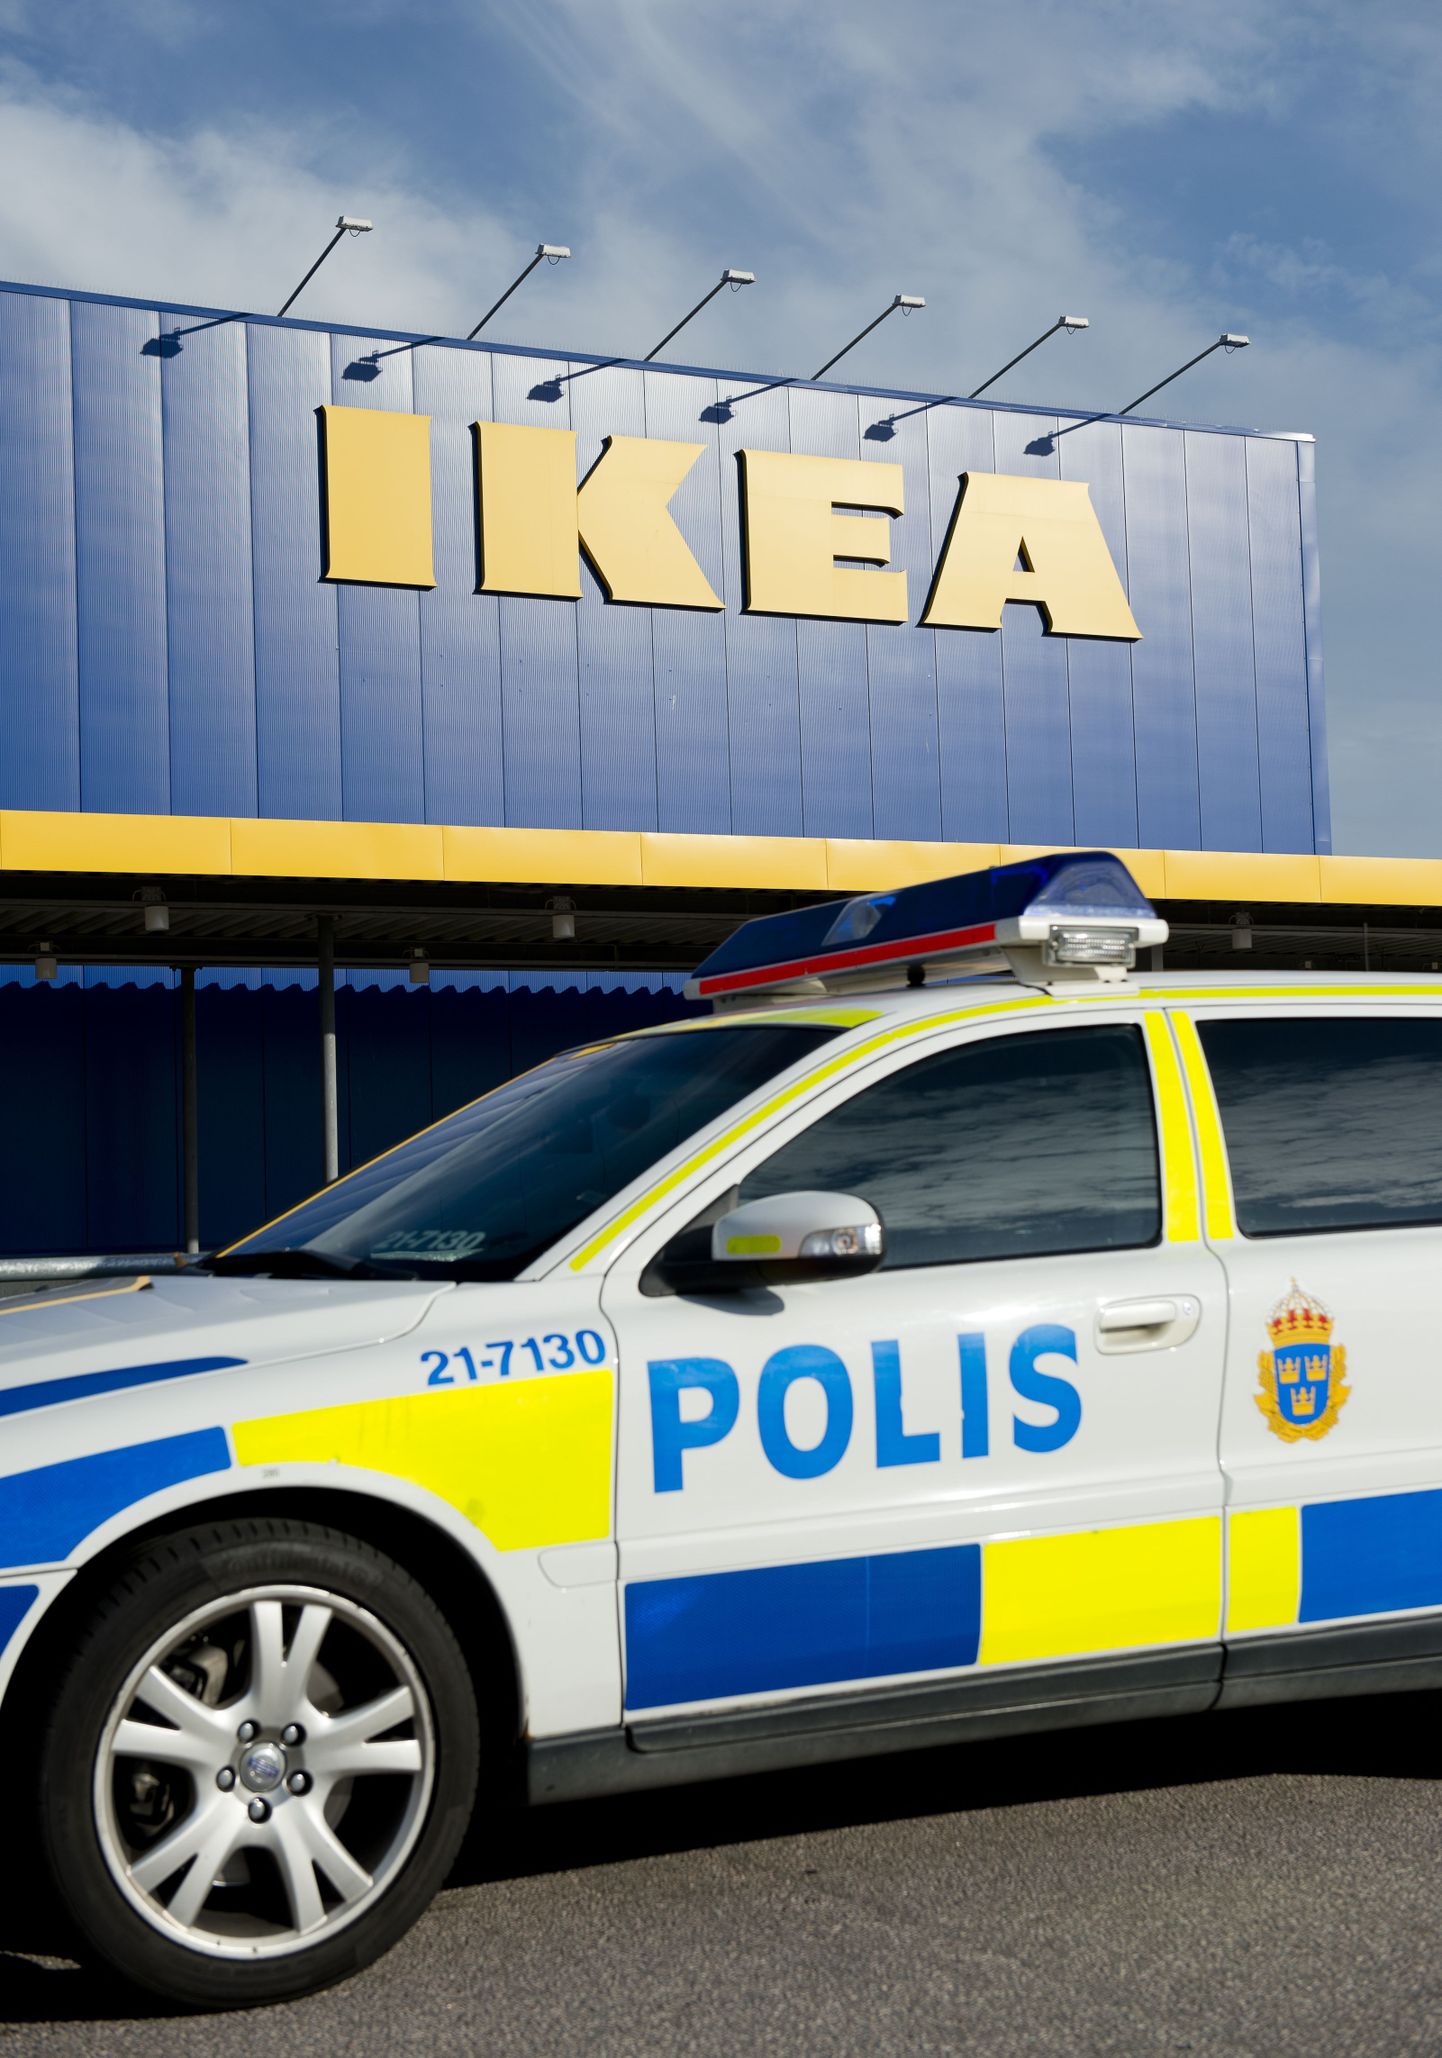 Продажа ножей в магазине IKEA в шведском городе Вестерос, где было совершено нападение на посетителей, временно приостановлена.